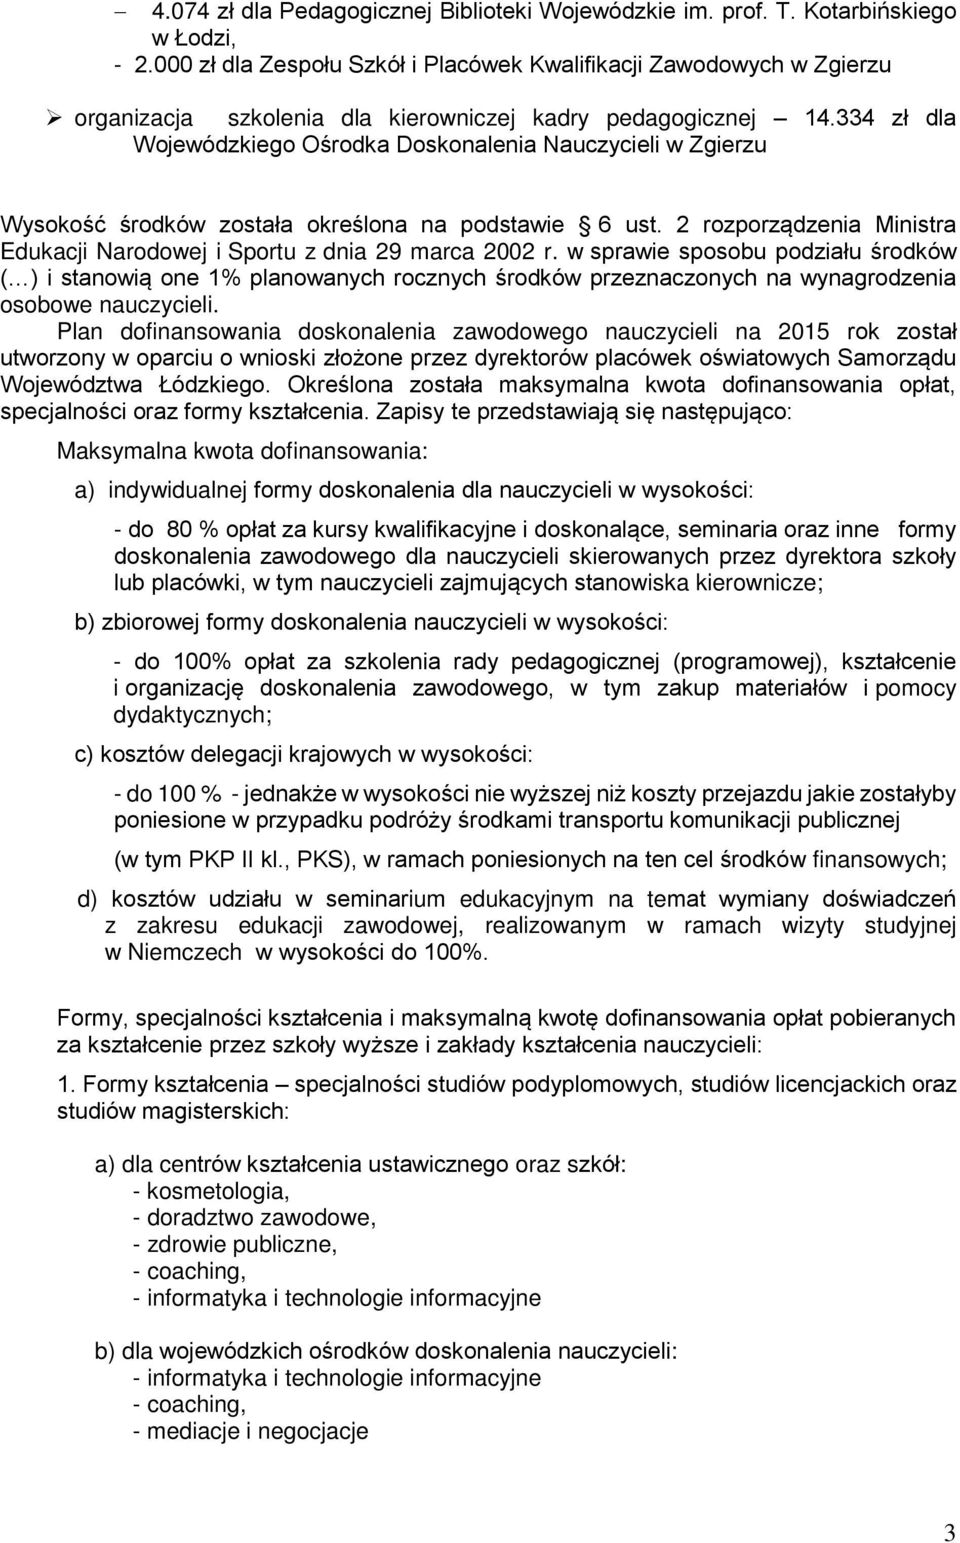 334 zł dla Wojewódzkiego Ośrodka Doskonalenia Nauczycieli w Zgierzu Wysokość środków została określona na podstawie 6 ust. 2 rozporządzenia Ministra Edukacji Narodowej i Sportu z dnia 29 marca 2002 r.